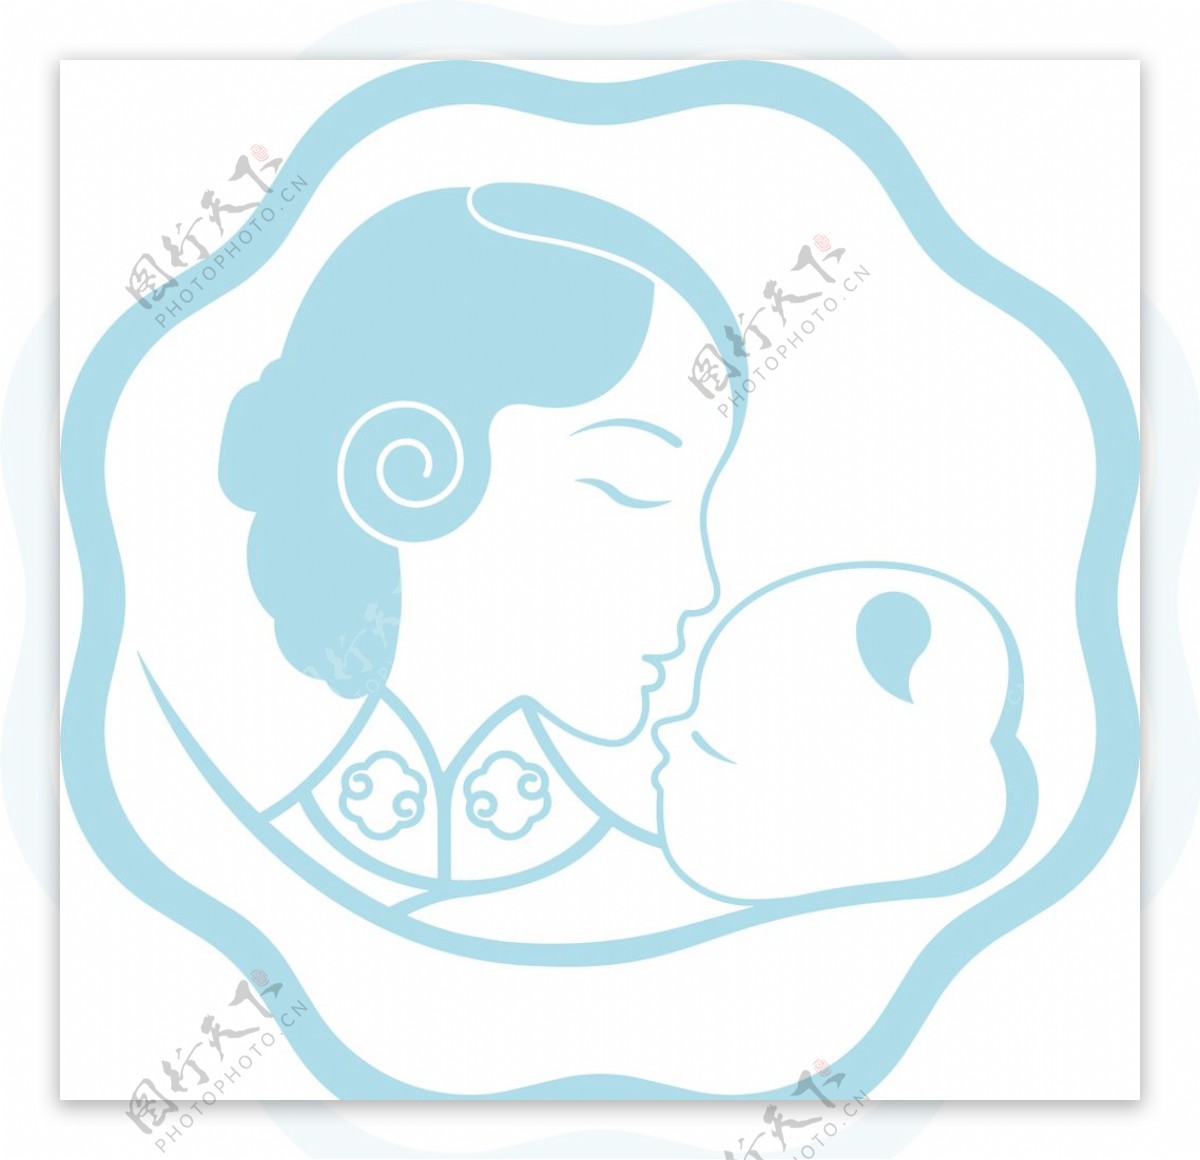 母婴logo图片